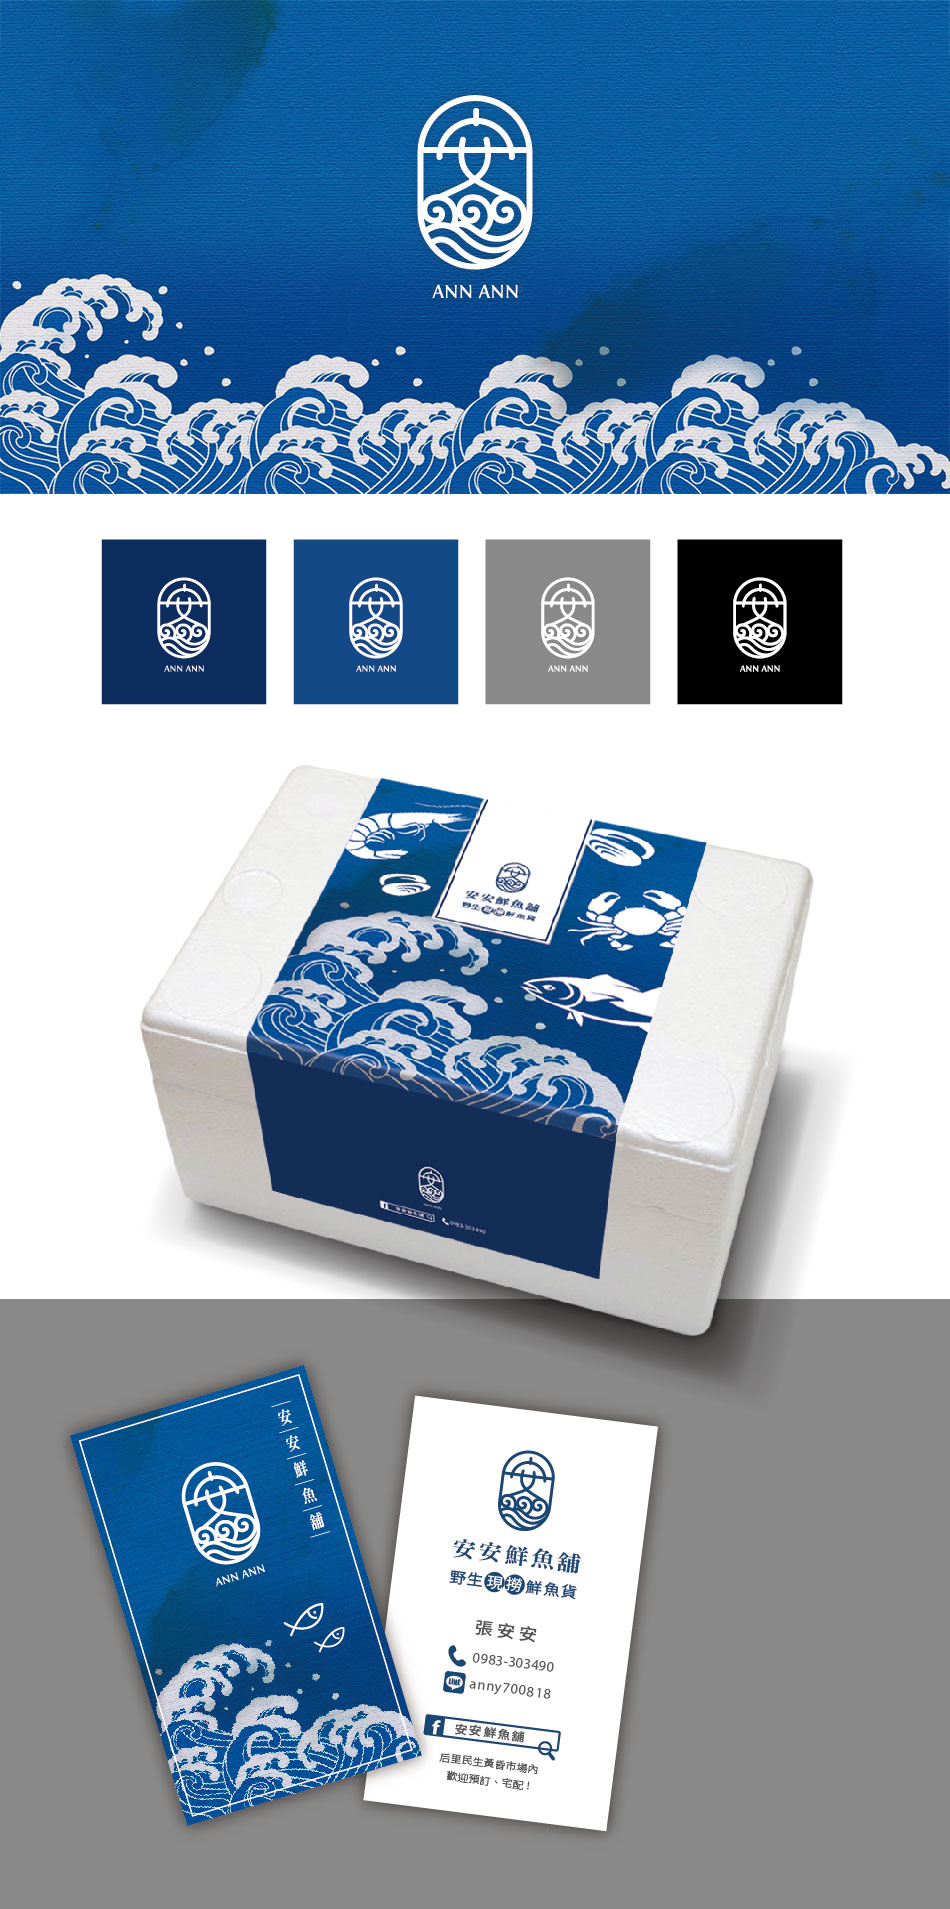 安安鮮魚小舖-商標&包裝設計